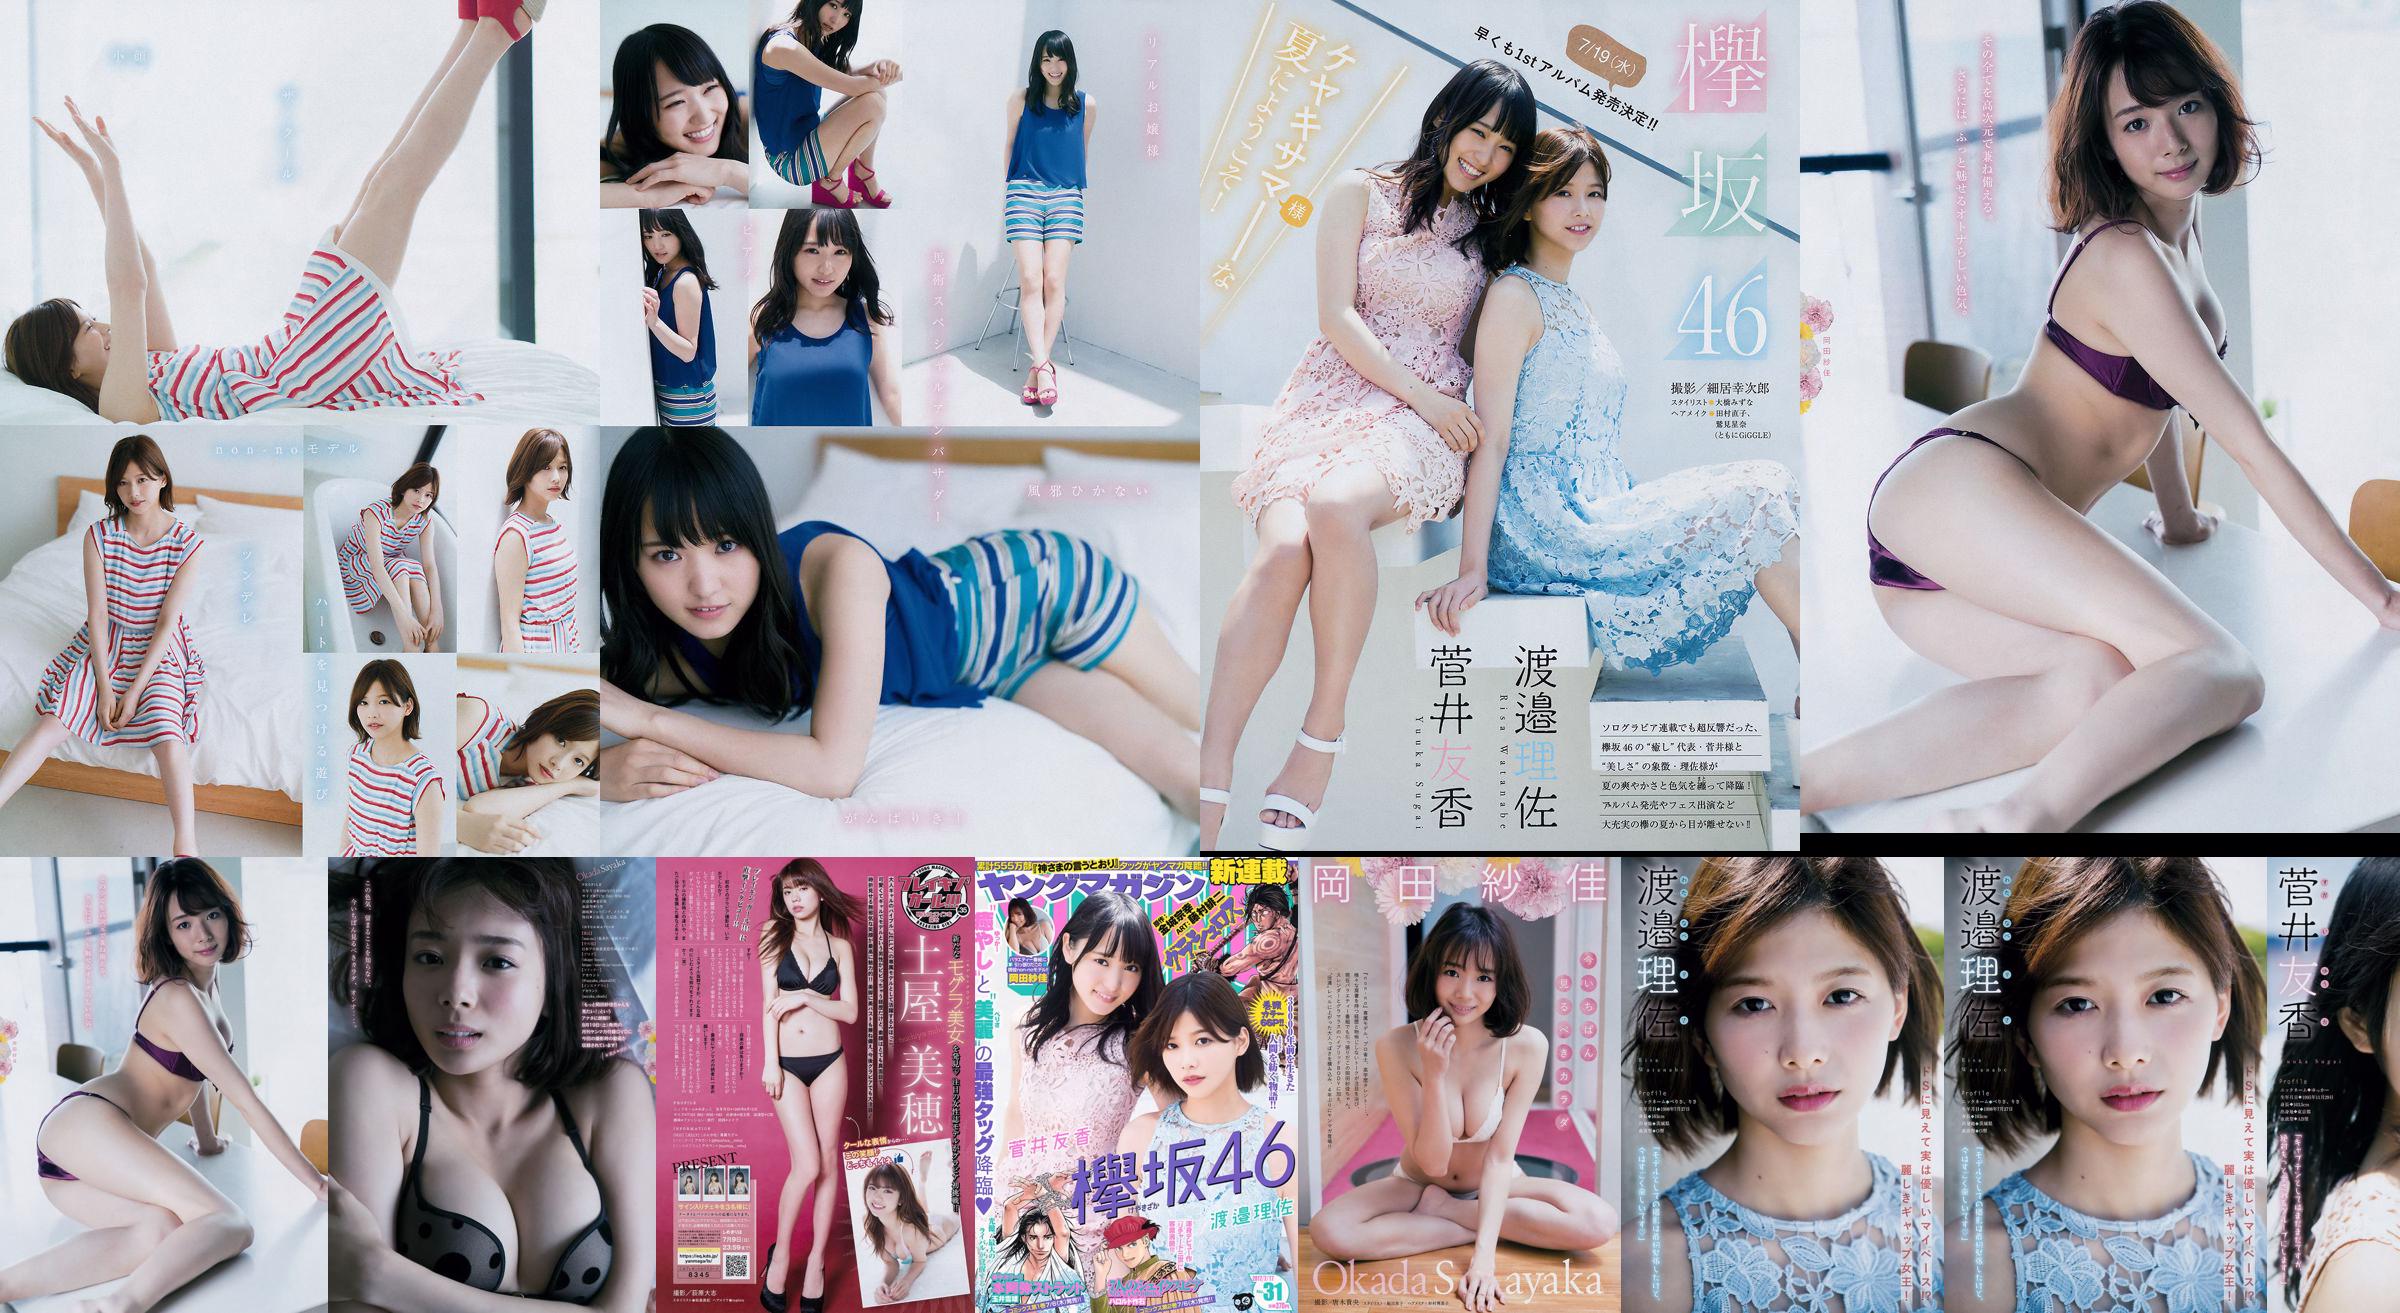 [Junges Magazin] Watanabe Risa, Sugai Yuka, Okada Saika 2017 Nr. 31 Fotomagazin No.590566 Seite 16